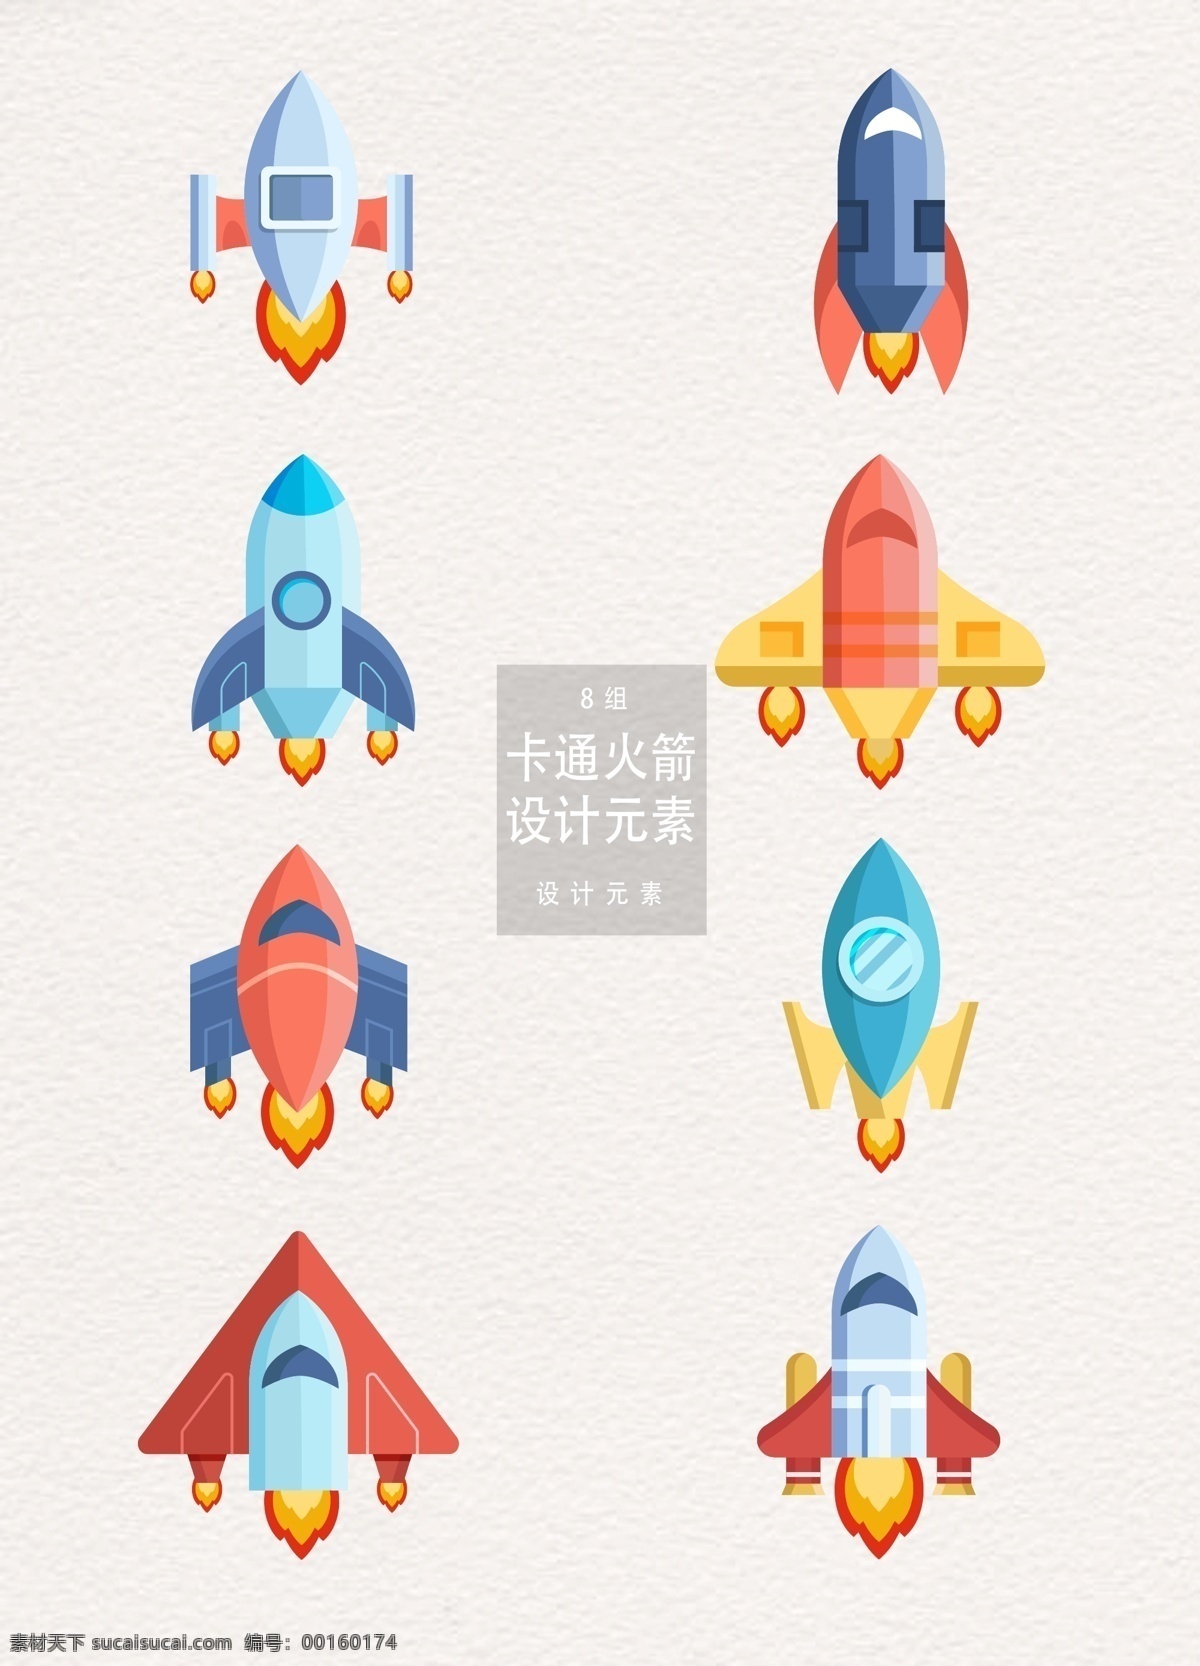 卡通 火箭 元素 卡通火箭 设计元素 航天 宇宙 火箭元素 航天科技